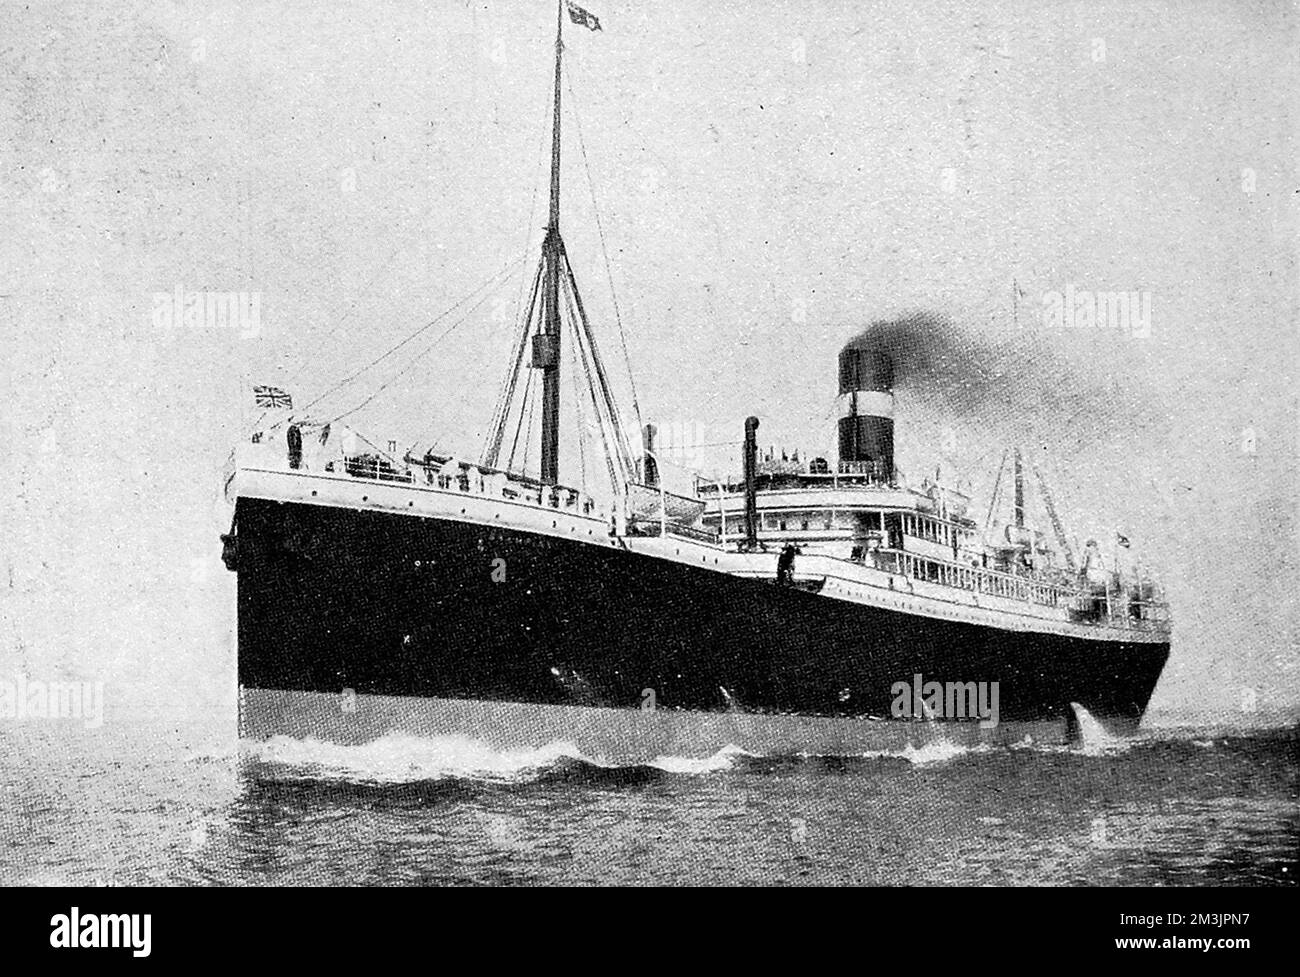 Das Schiff "Hesperian" versenkte am 4. 1915. September von einem deutschen U-Boot vor der irischen Südküste auf einer Reise von Liverpool nach Montreal. Da das Schiff nicht länger als 24 Stunden unterging, konnten die Besatzung und die Passagiere entkommen, mit wenigen Todesopfern. Stockfoto